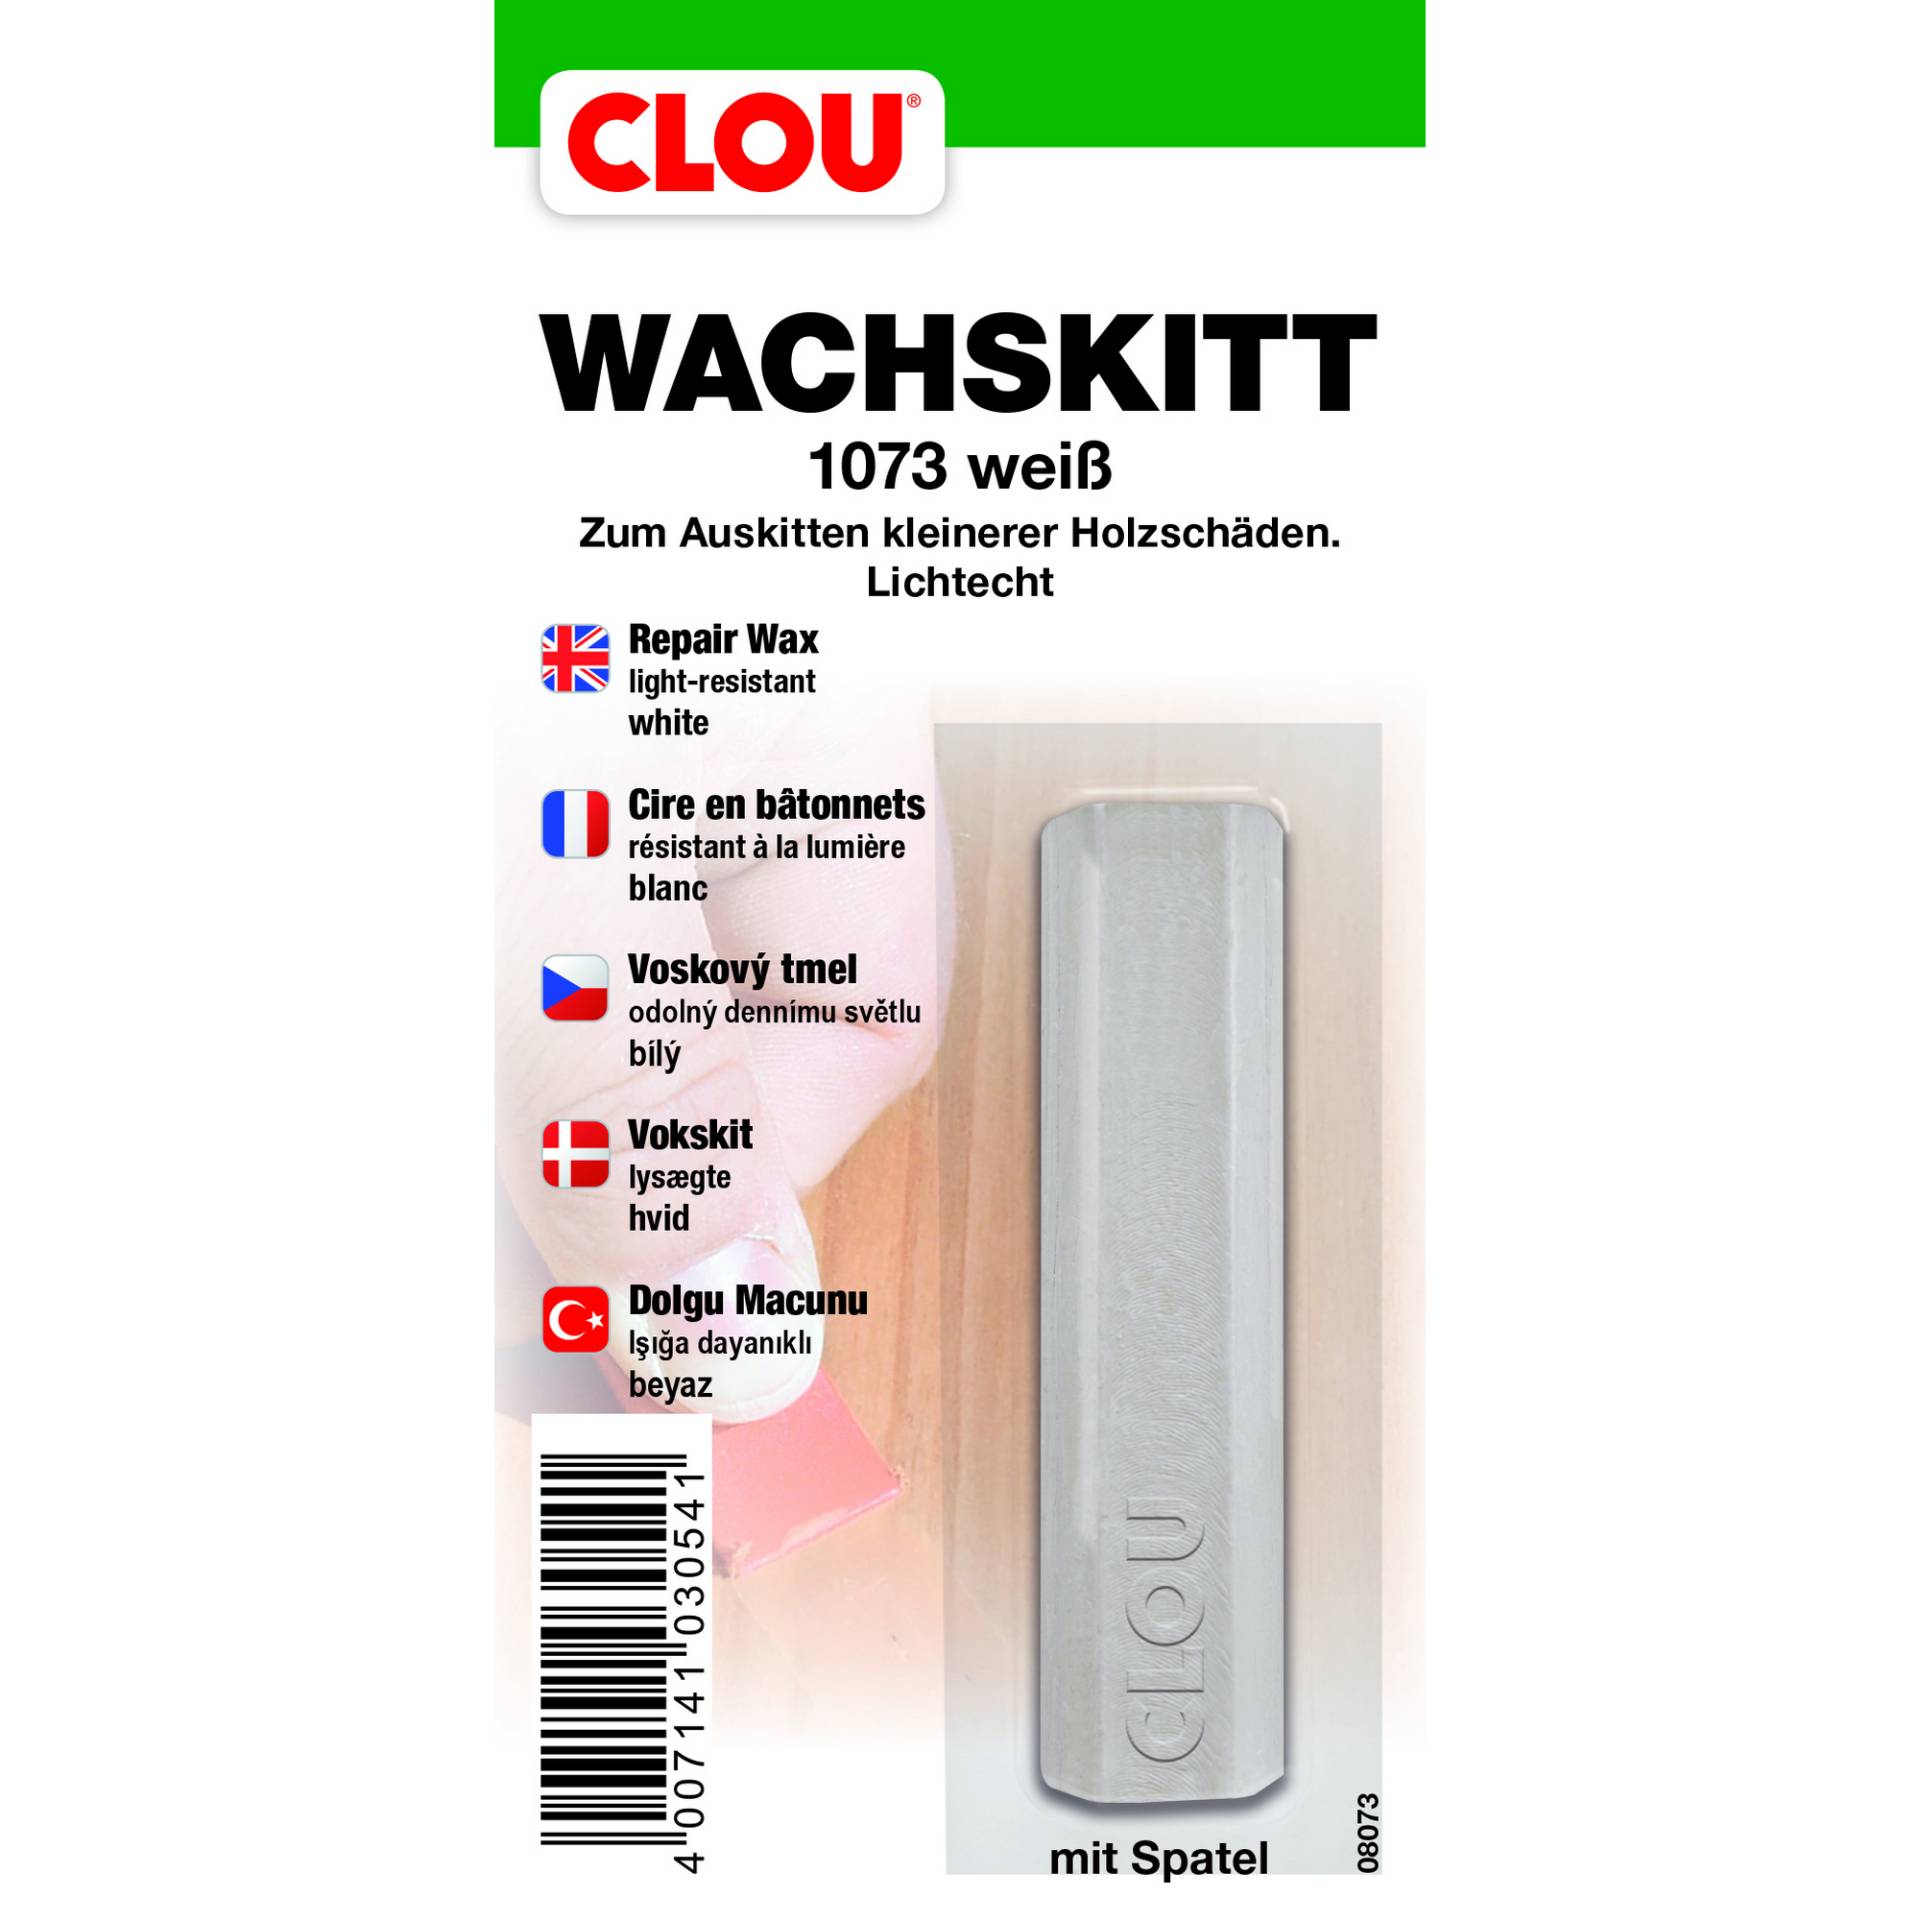 Clou Wachskitt weiß von Clou